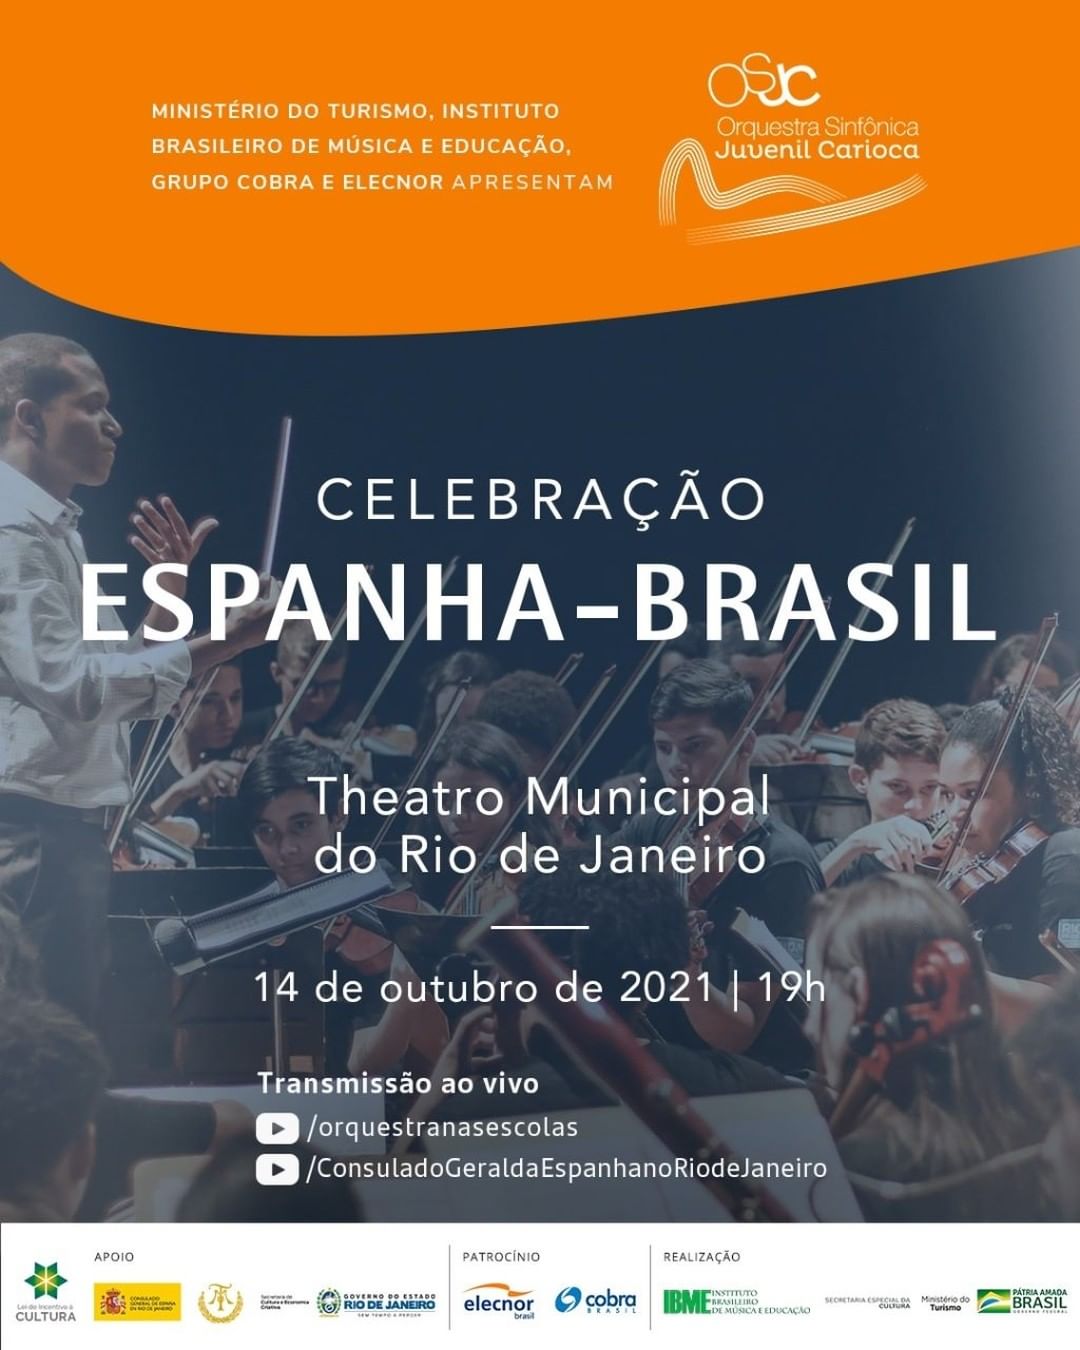 Consulado de España en Río on X: Em 2019 @CGEspRio apoiou #estudantes da  rede pública em uma viagem pela #espanha produzindo música e encontros.  Hoje,19hs,Orquestra Sinfônica Juvenil Carioca homenageia o país em